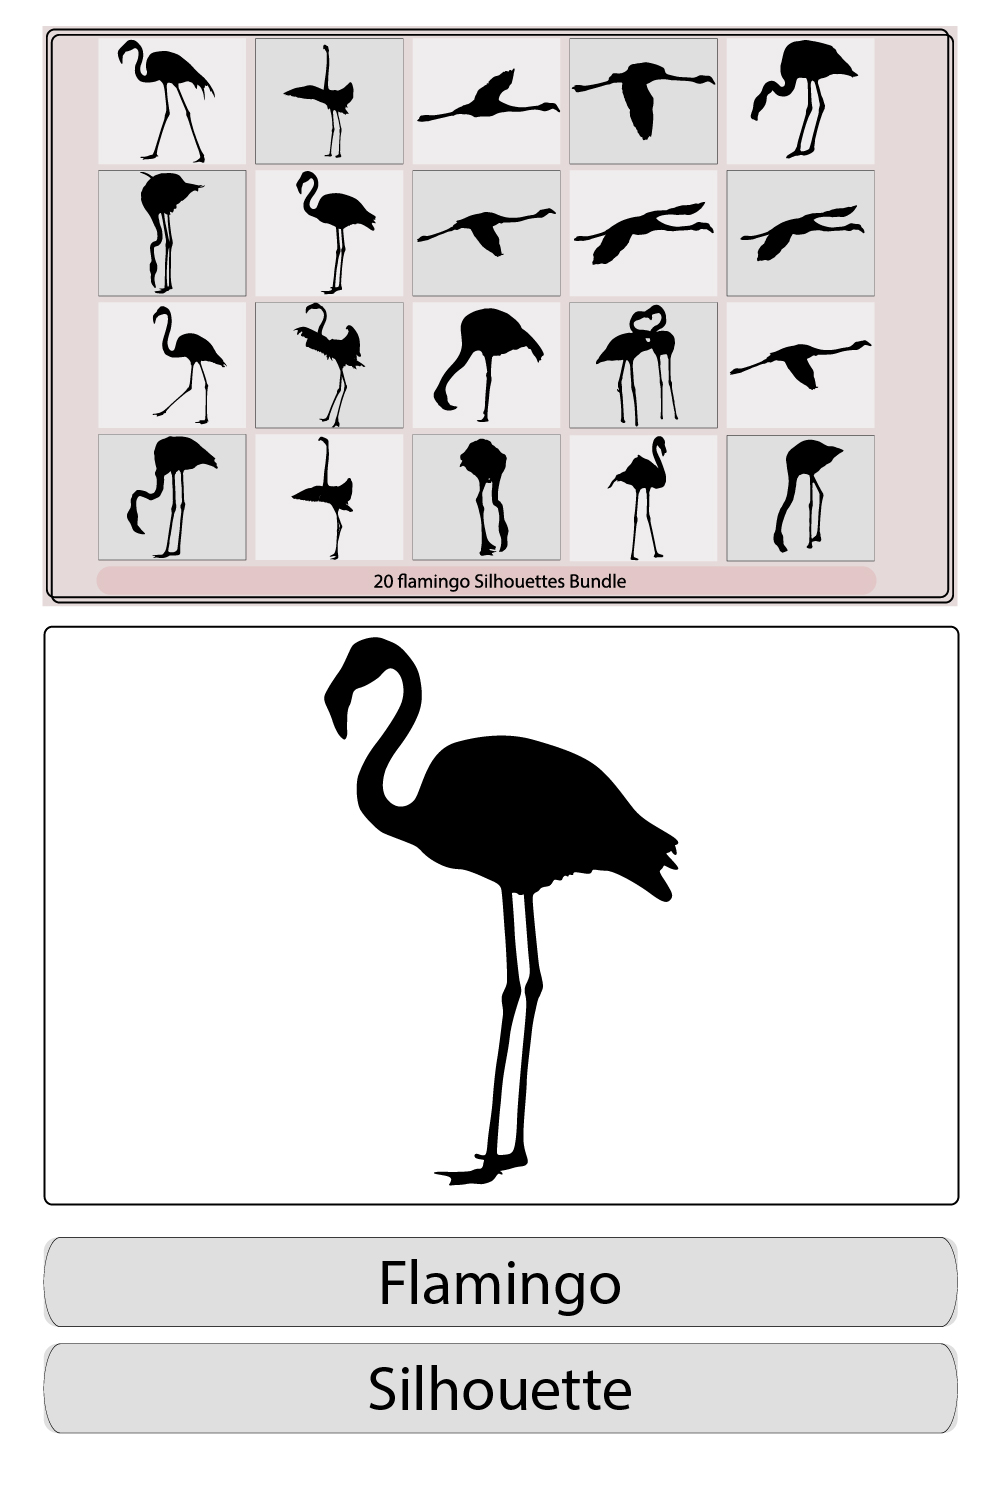 Flamingo silhouettes,Black silhouette flamingo logo vector,Flamingo Set Black and White pinterest preview image.